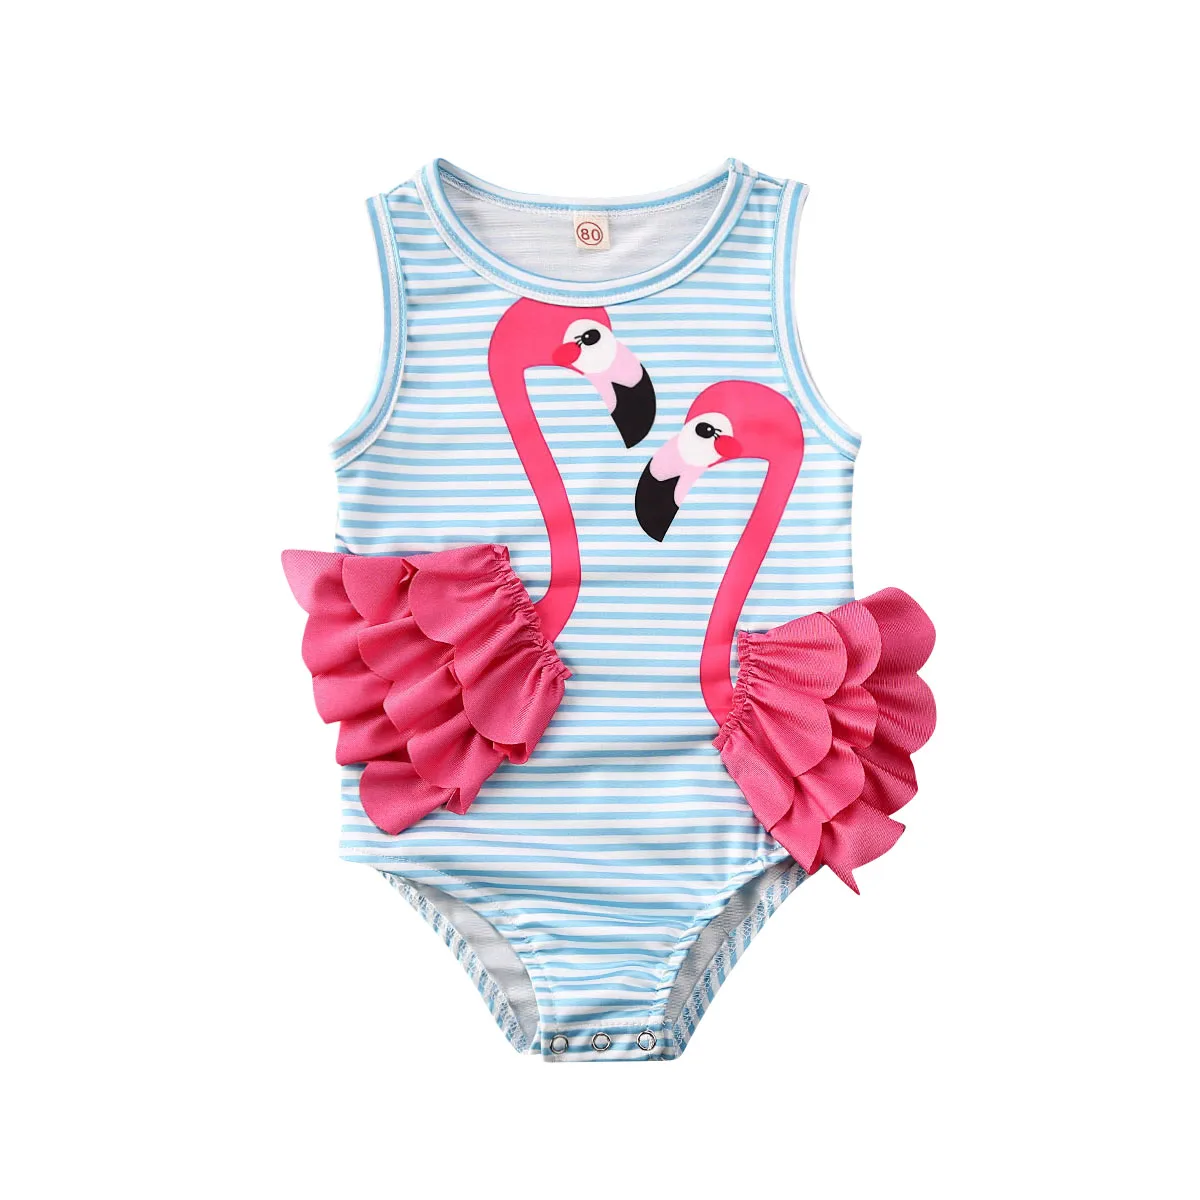 Детская одежда для купания; Новинка г.; одежда для маленьких девочек с изображением фламинго; цельный купальник-бикини для маленьких девочек; купальный костюм; пляжная одежда